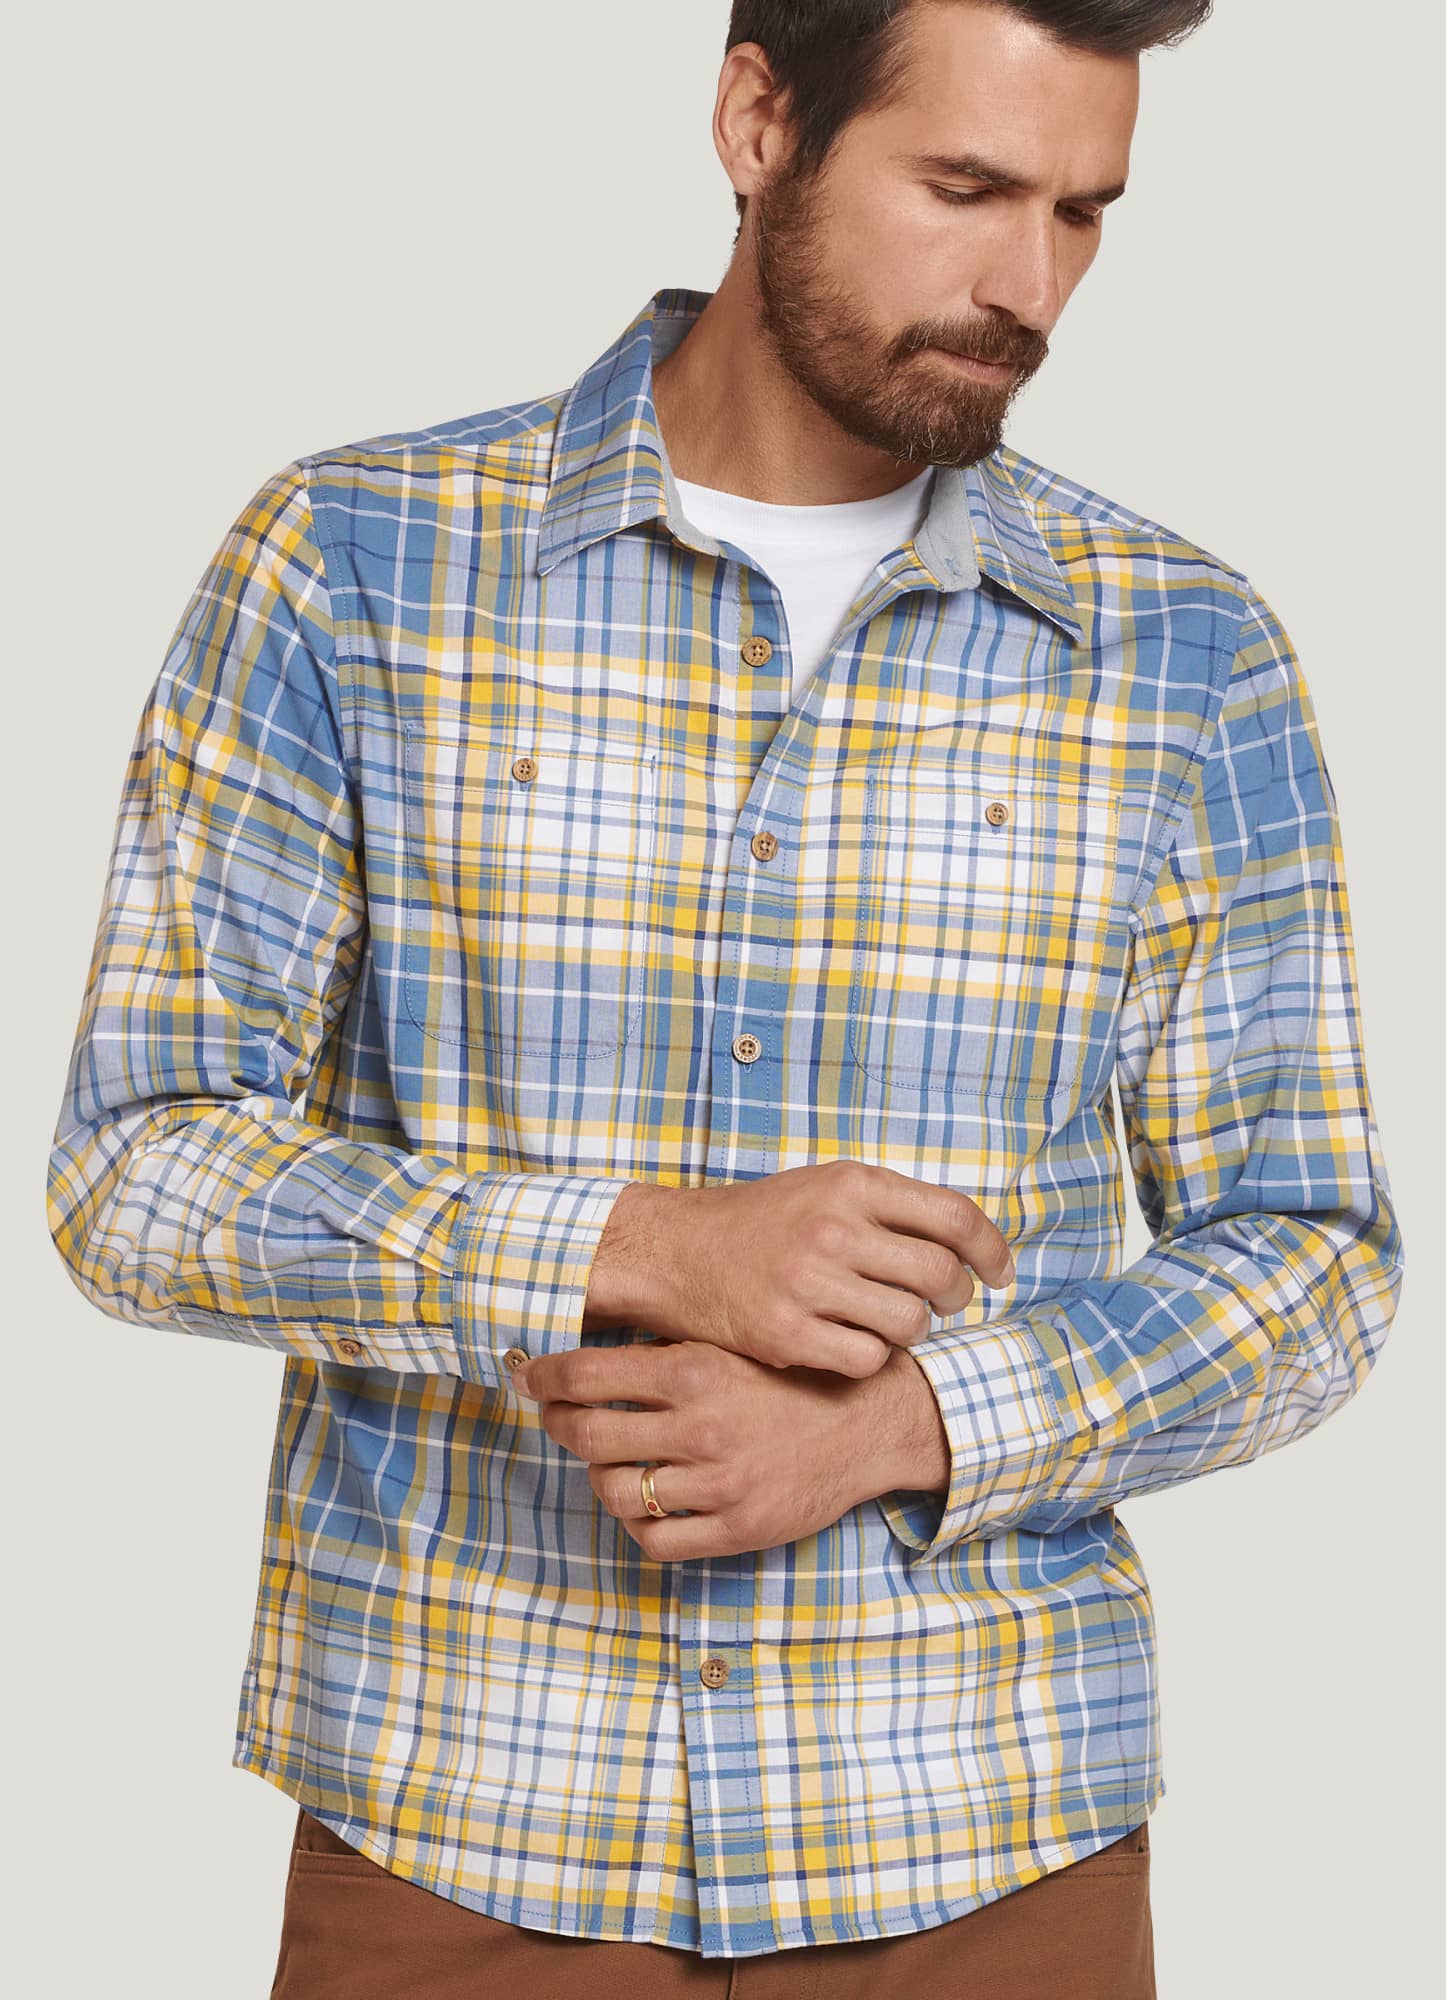 Jockey Outdoors™ Long Sleeve Woven Button-Up Shirt